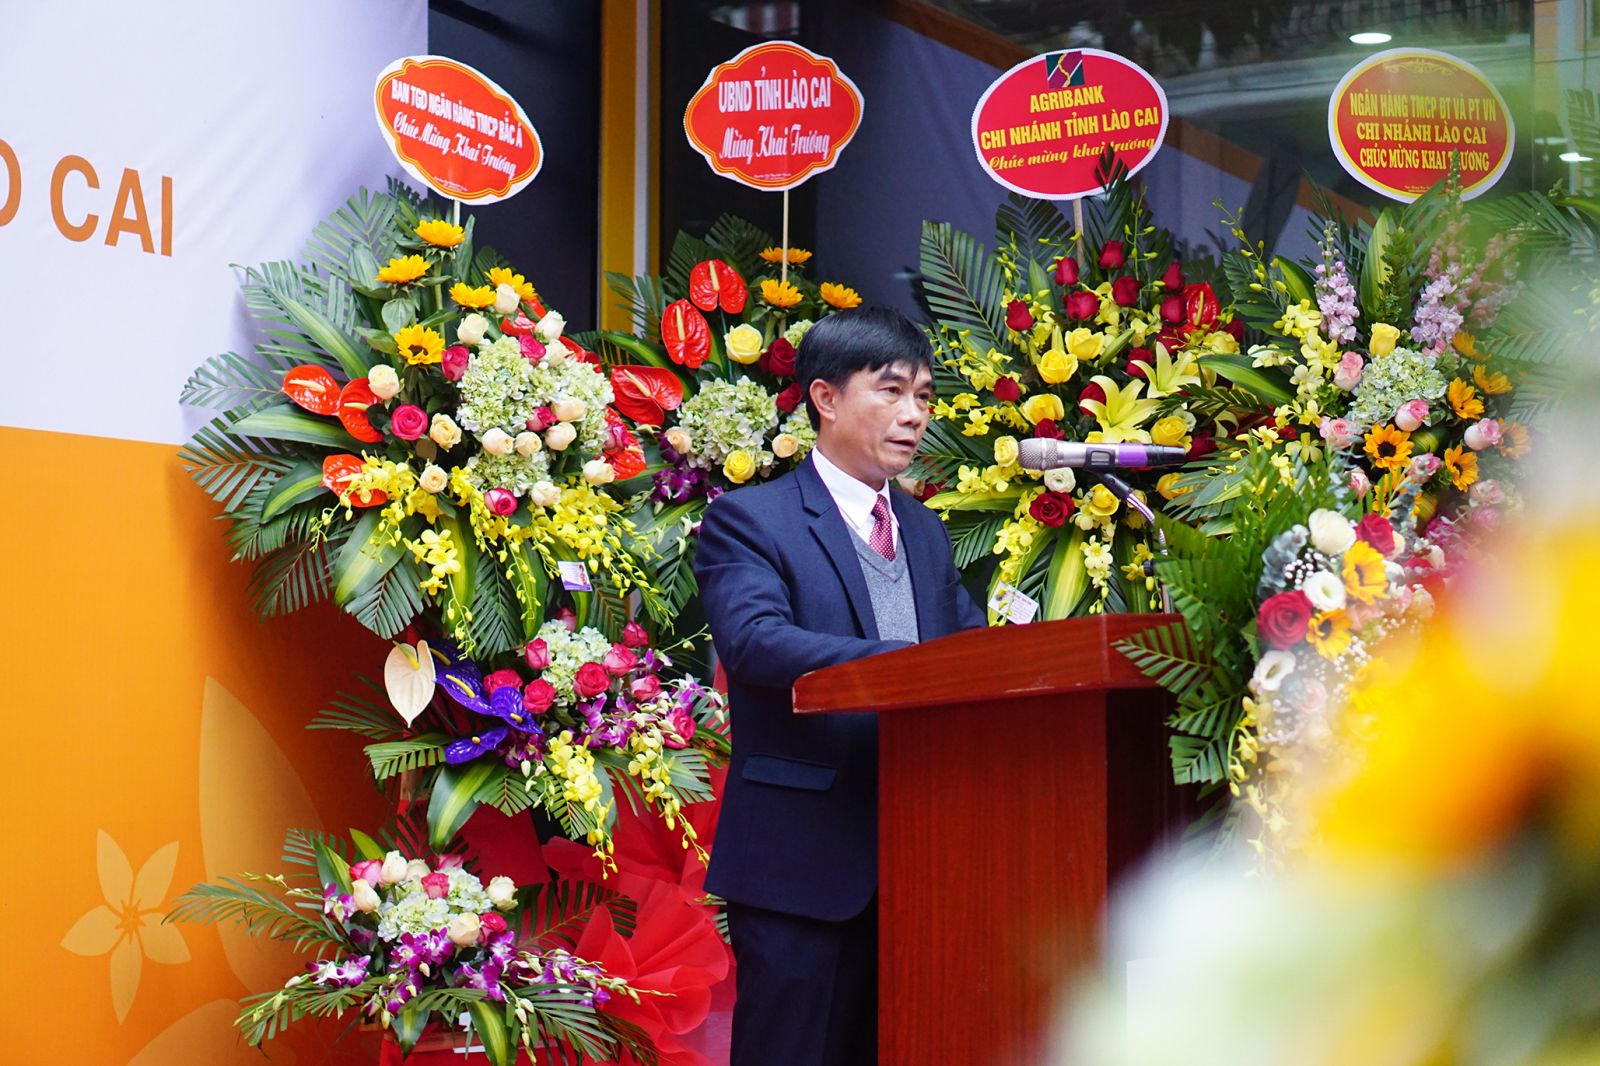 Ông Trương Thanh Xuân, Giám đốc Ngân hàng Nhà nước tỉnh Lào Cai, phát biểu chỉ đạo